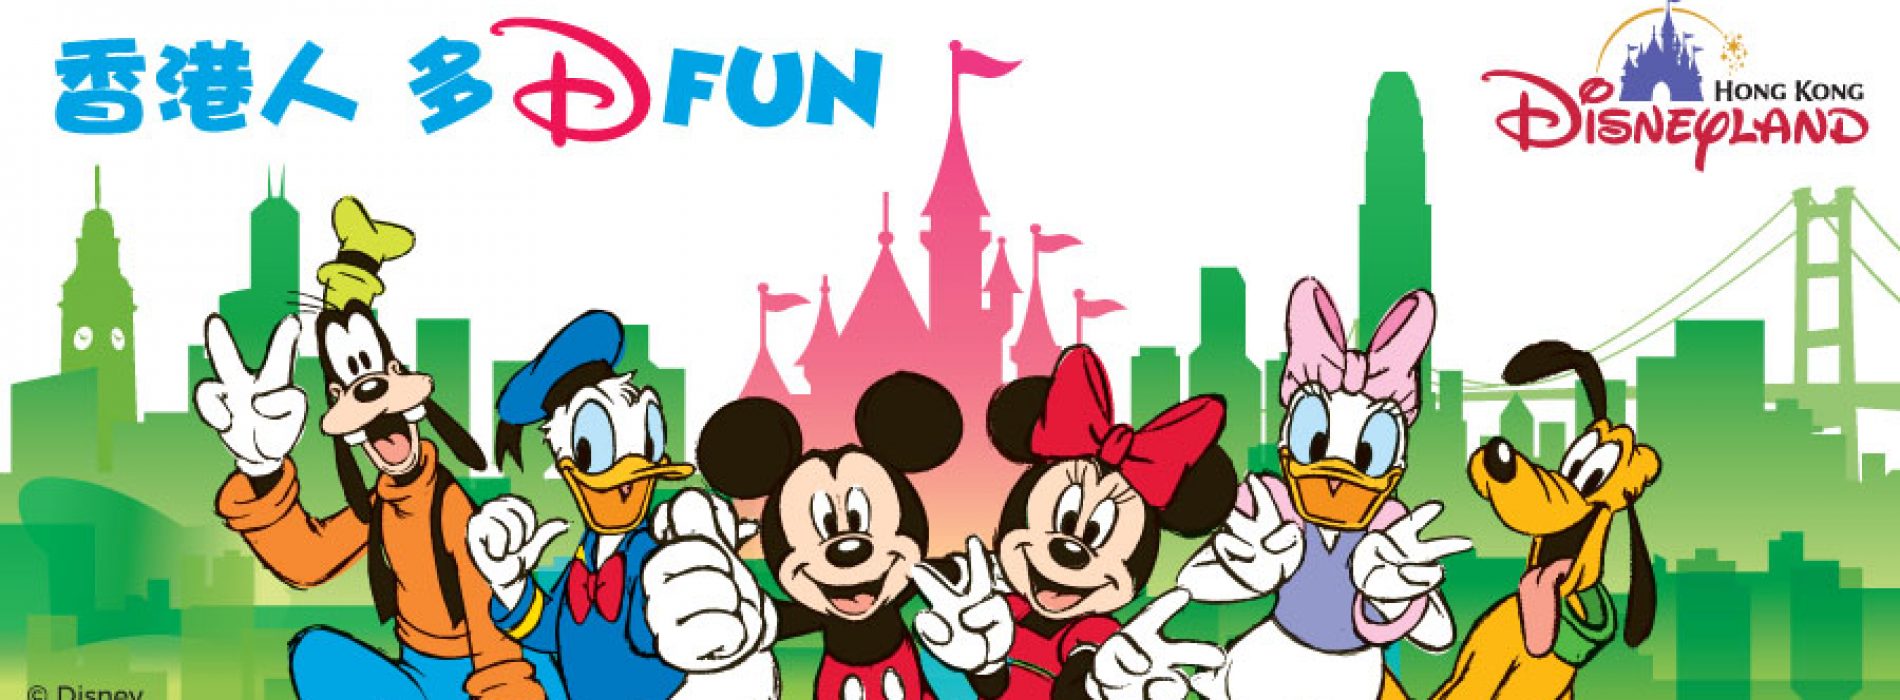 「香港人 多 Fun」大抽獎 送出 50,000 張香港迪士尼樂園門票